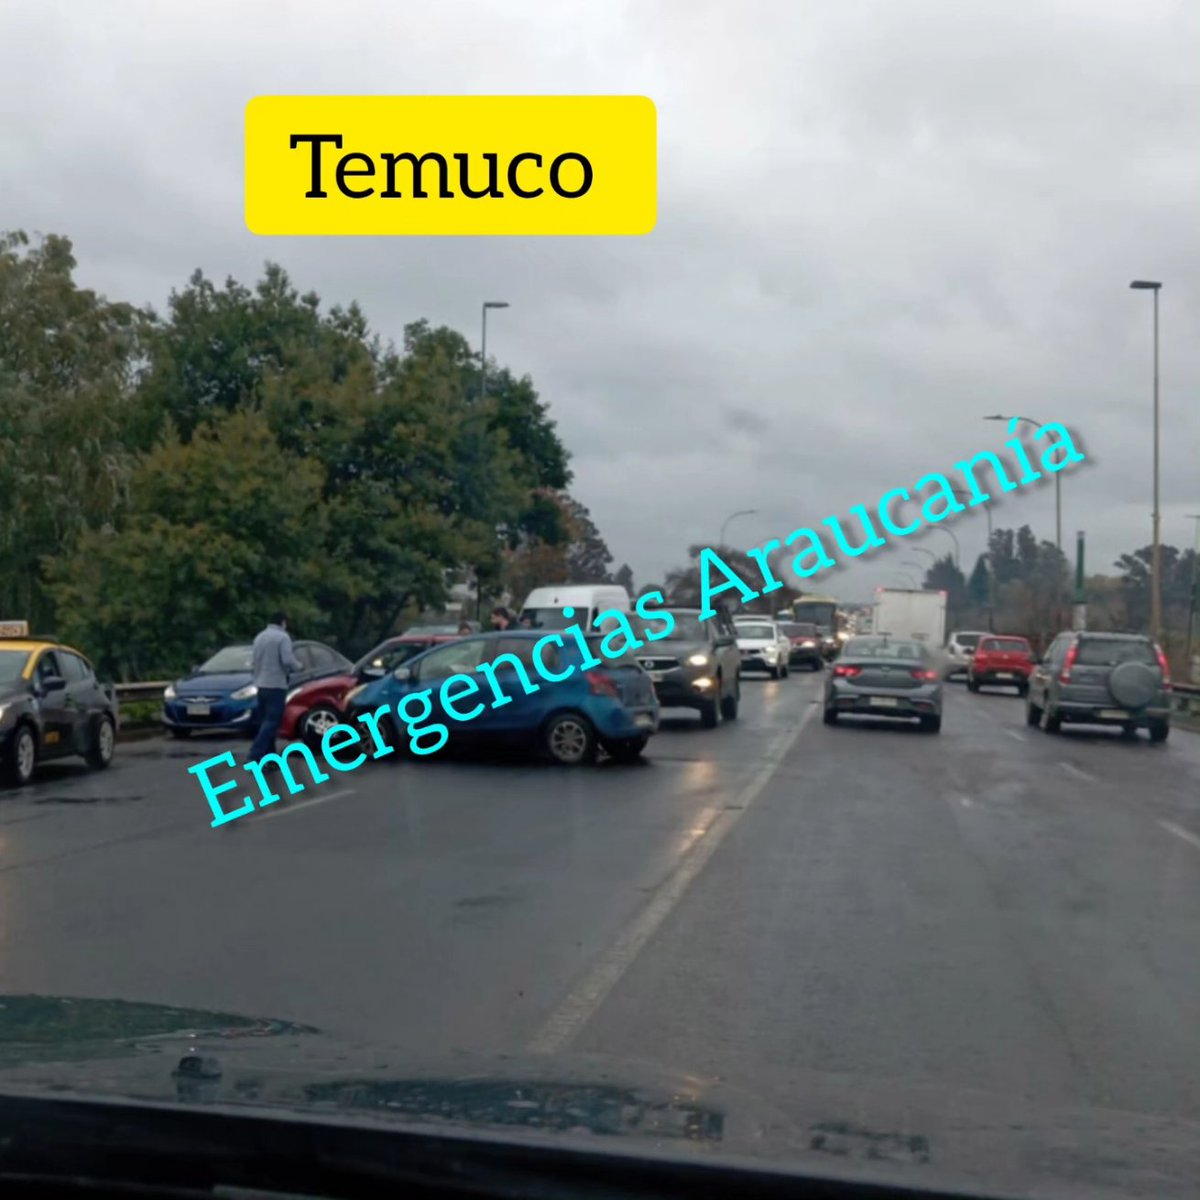 #Temuco 
Colisión de vehículos menores puente viejo.
Referencia Easy a #PadreLasCasas.